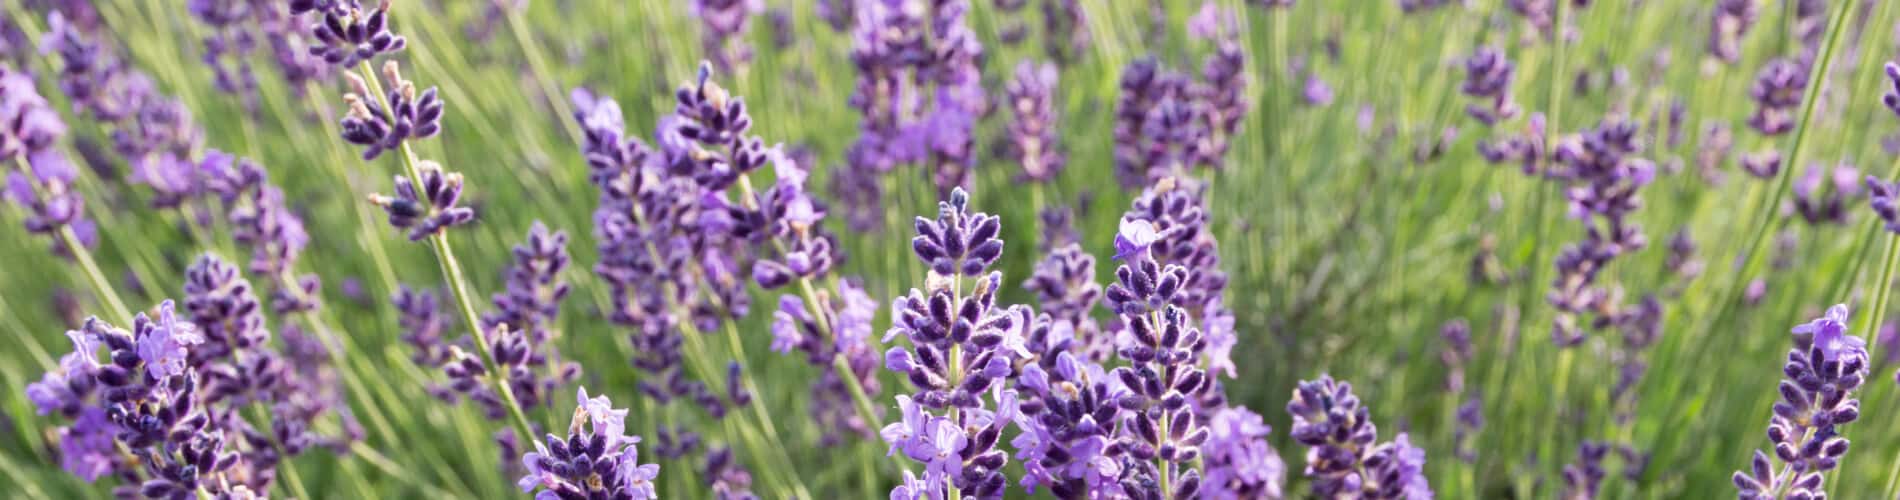 Duftender Lavendel: Heil- und Gewürzpflanze